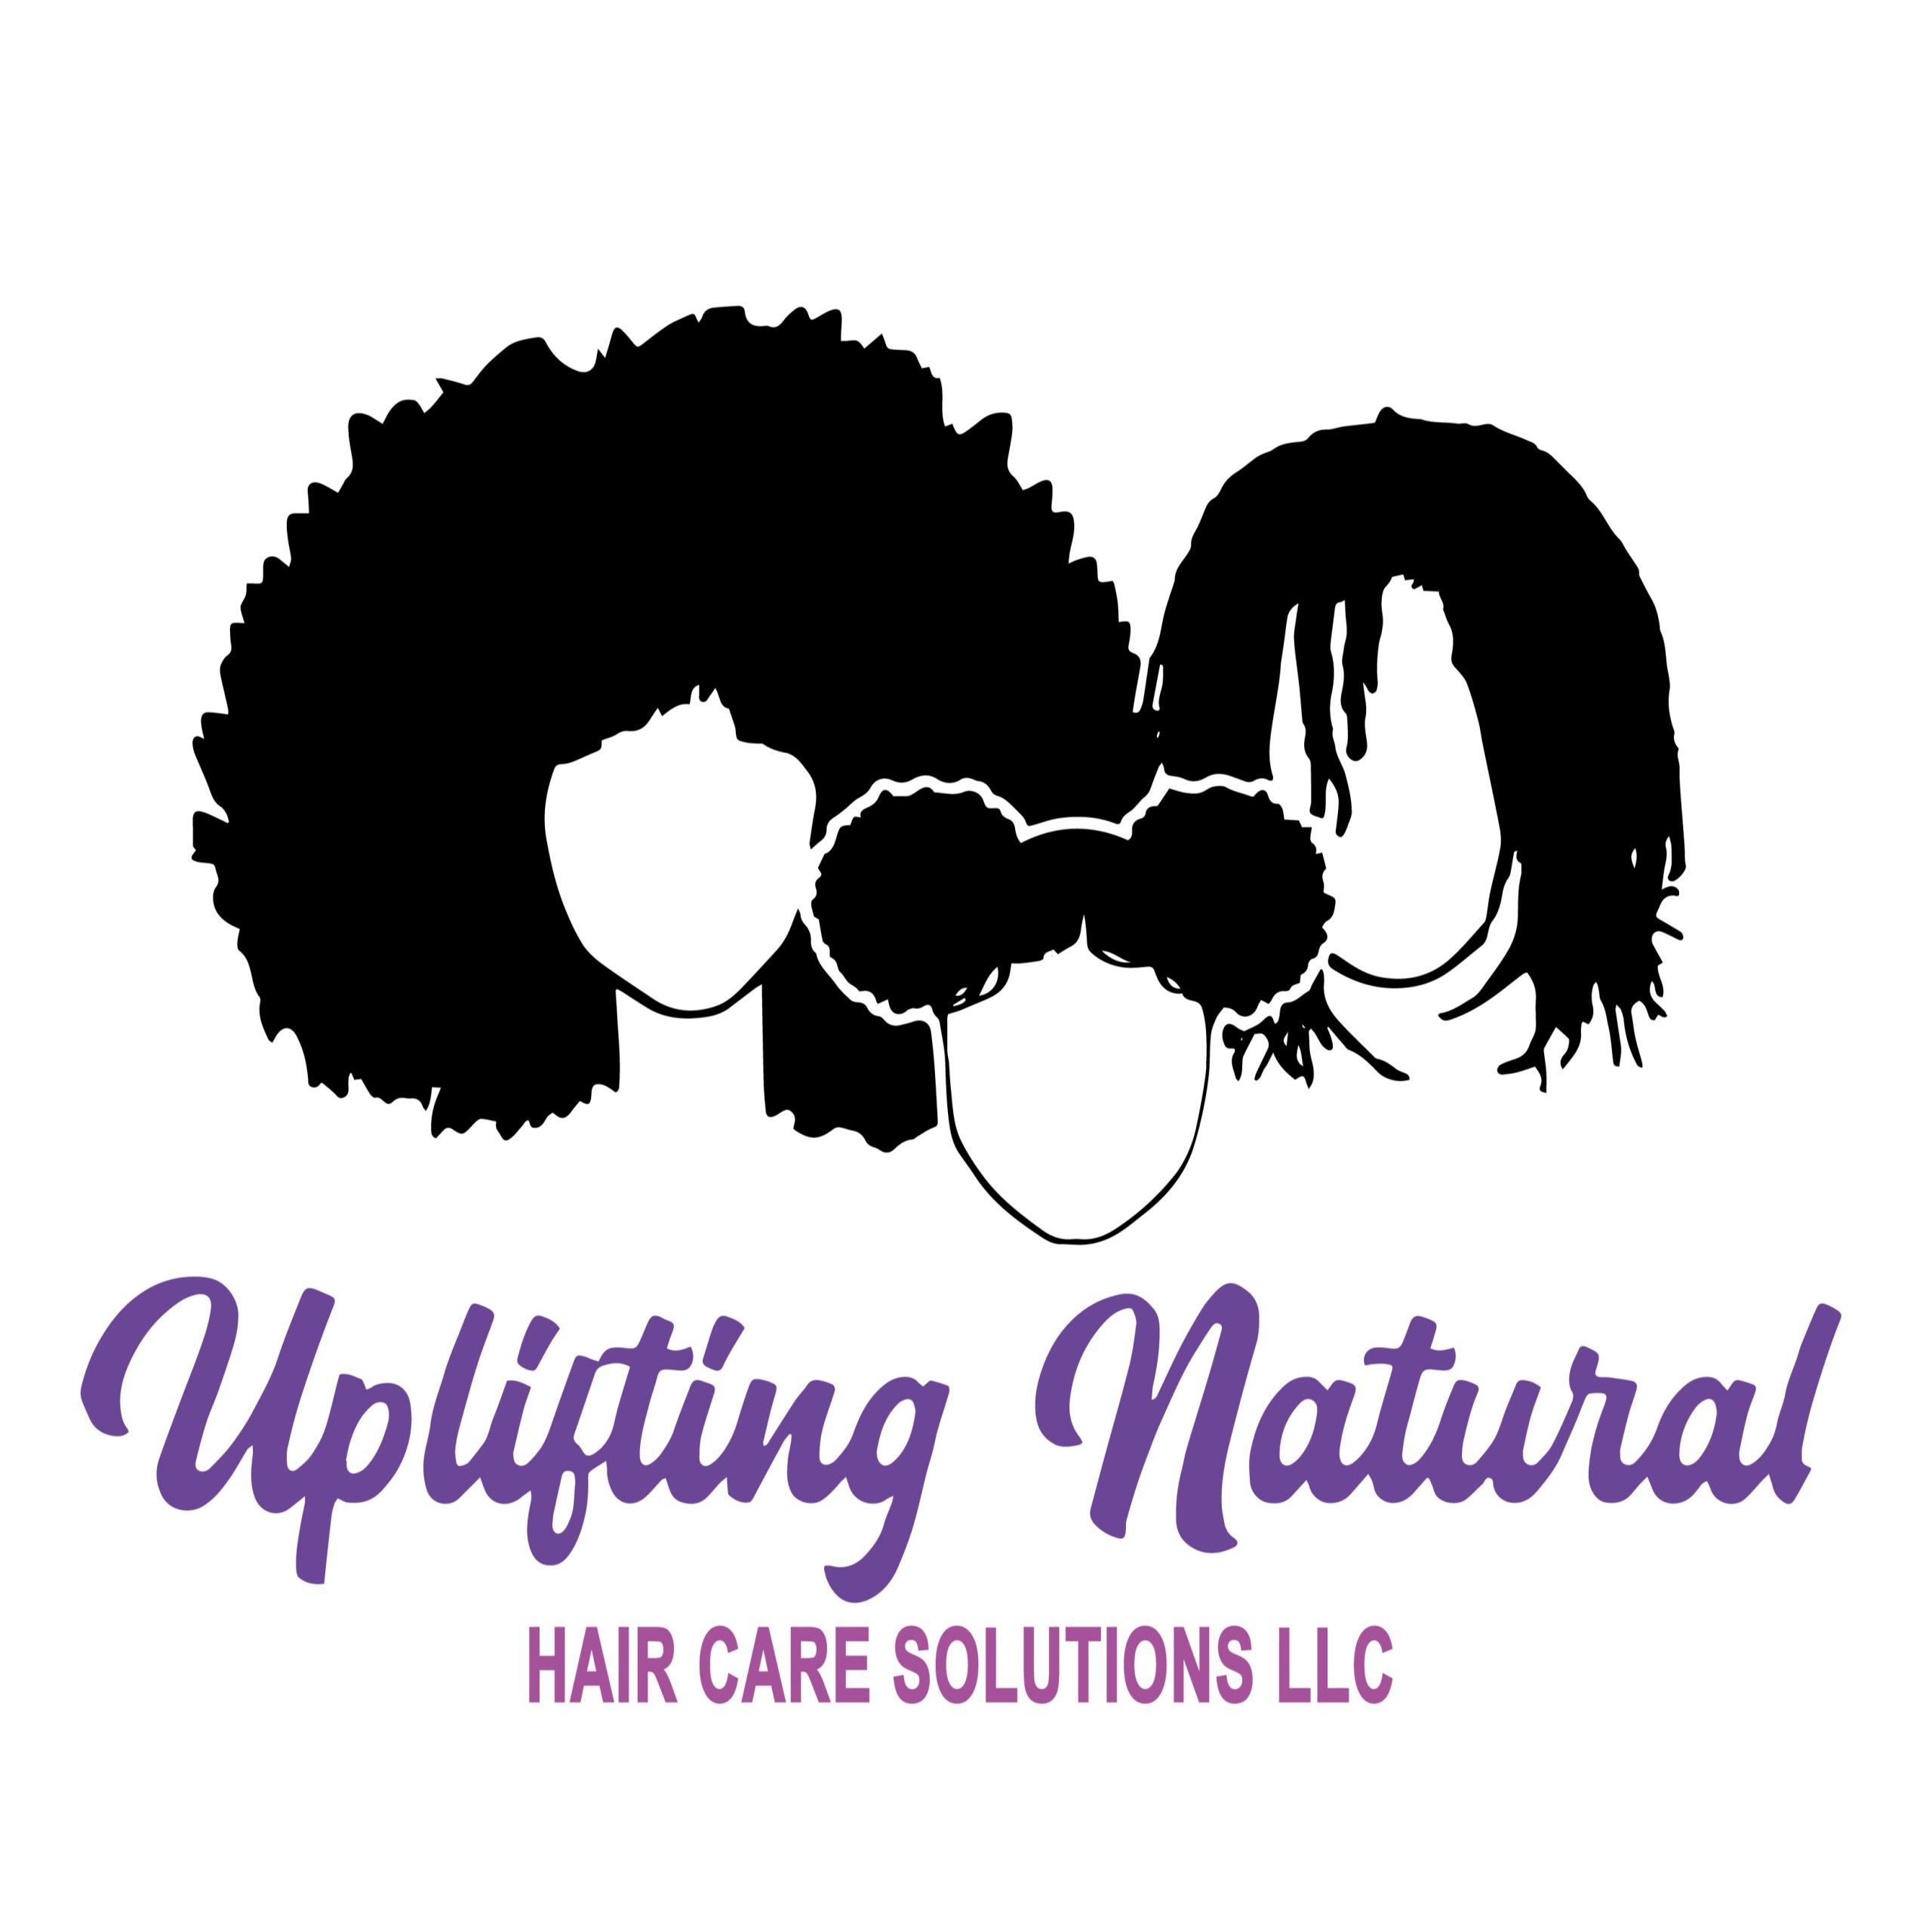 Uplifting Natural Hair Care Solutions - Brooklyn, NY 11213 - (917)615-9305 | ShowMeLocal.com